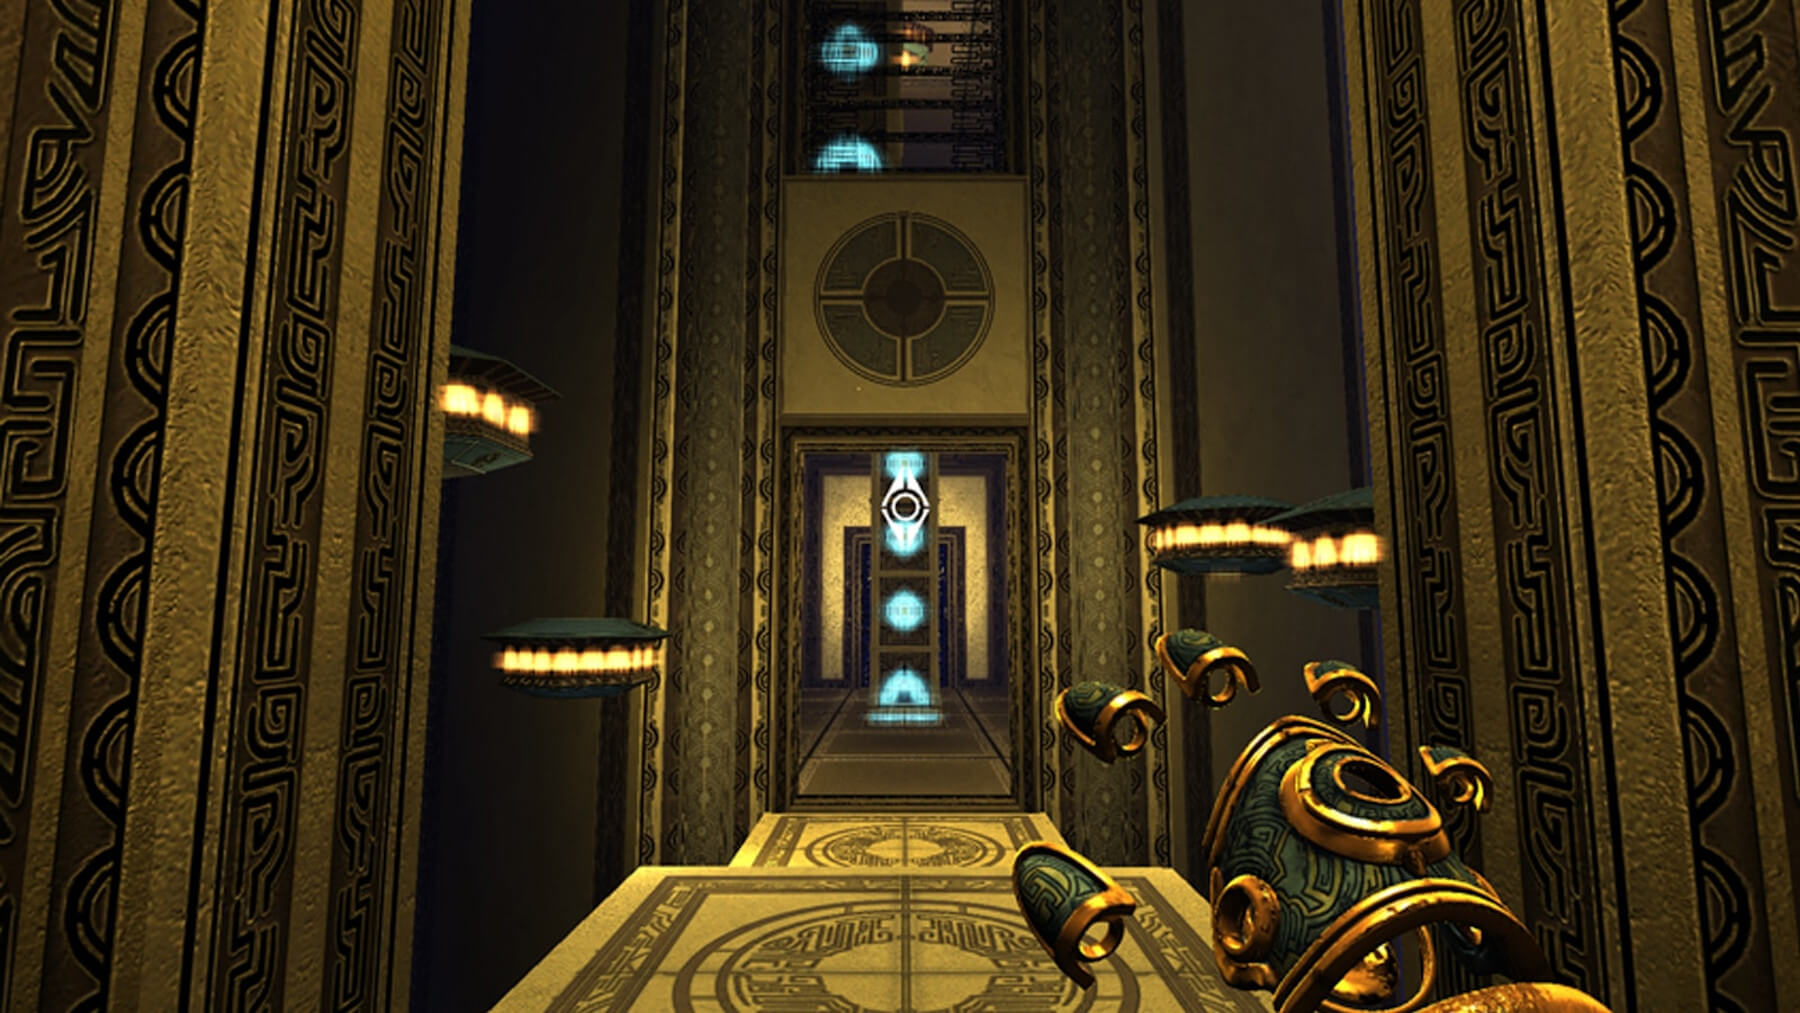 Captura de pantalla del Templo de las Nubes que muestra el interior del templo con pisos y columnas doradas.